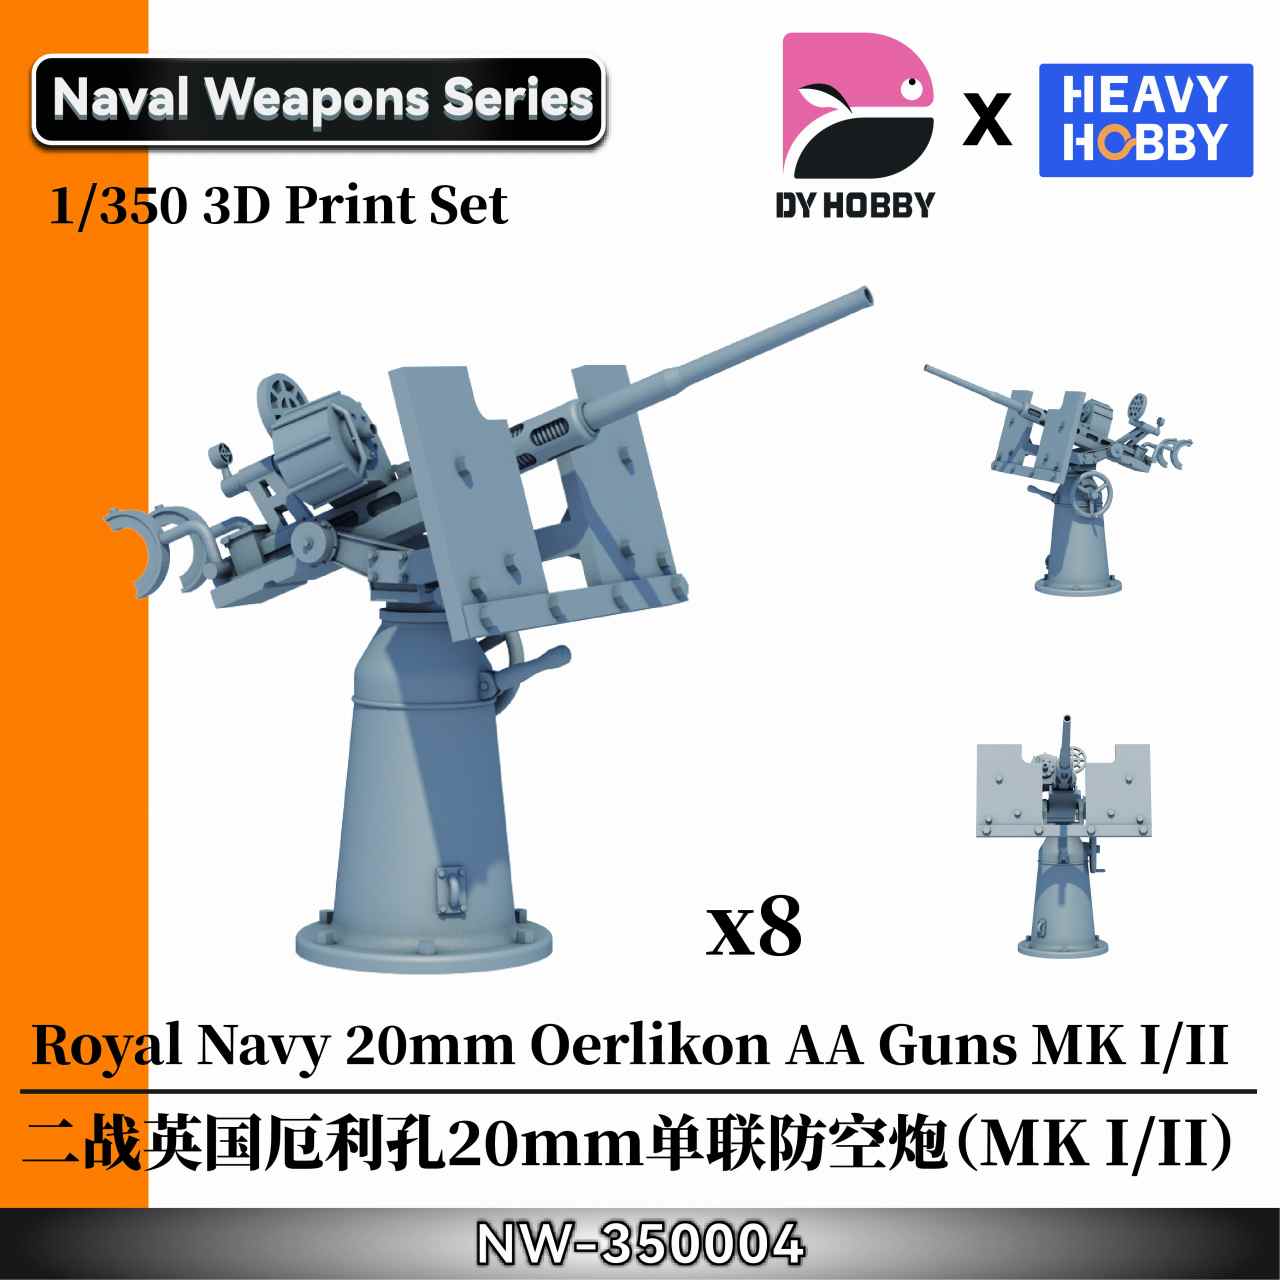 【新製品】NW-350004 1/350 WWII イギリス海軍 エリコン 20mm 単装機関砲 (MK I/II)